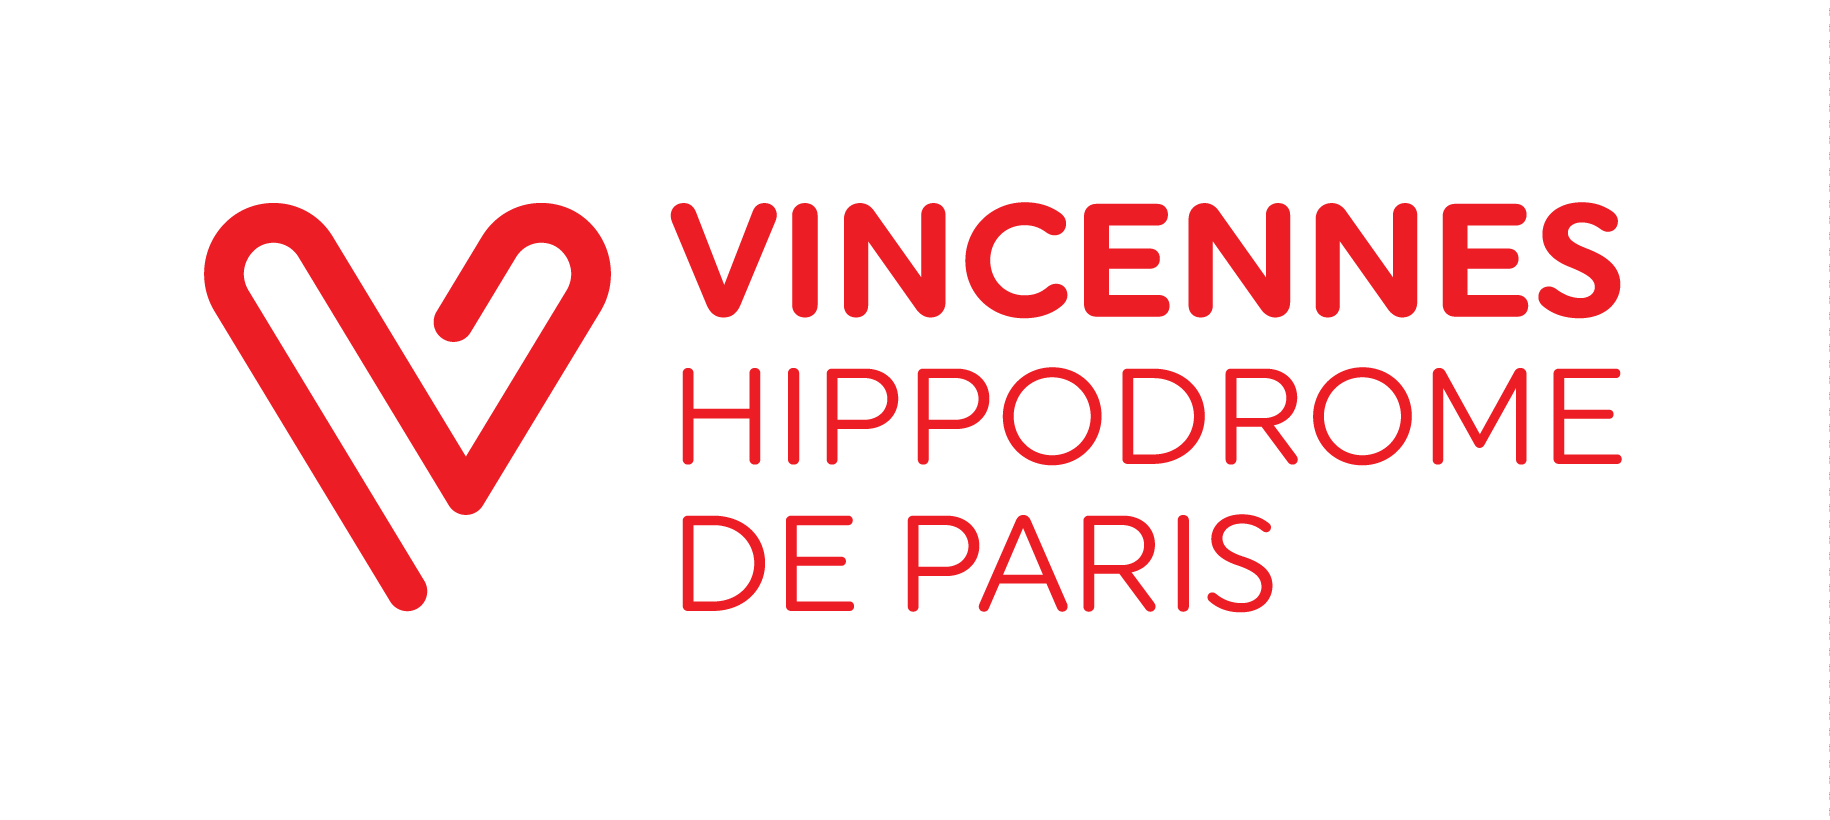 Vincennes hippodrome Paris logo